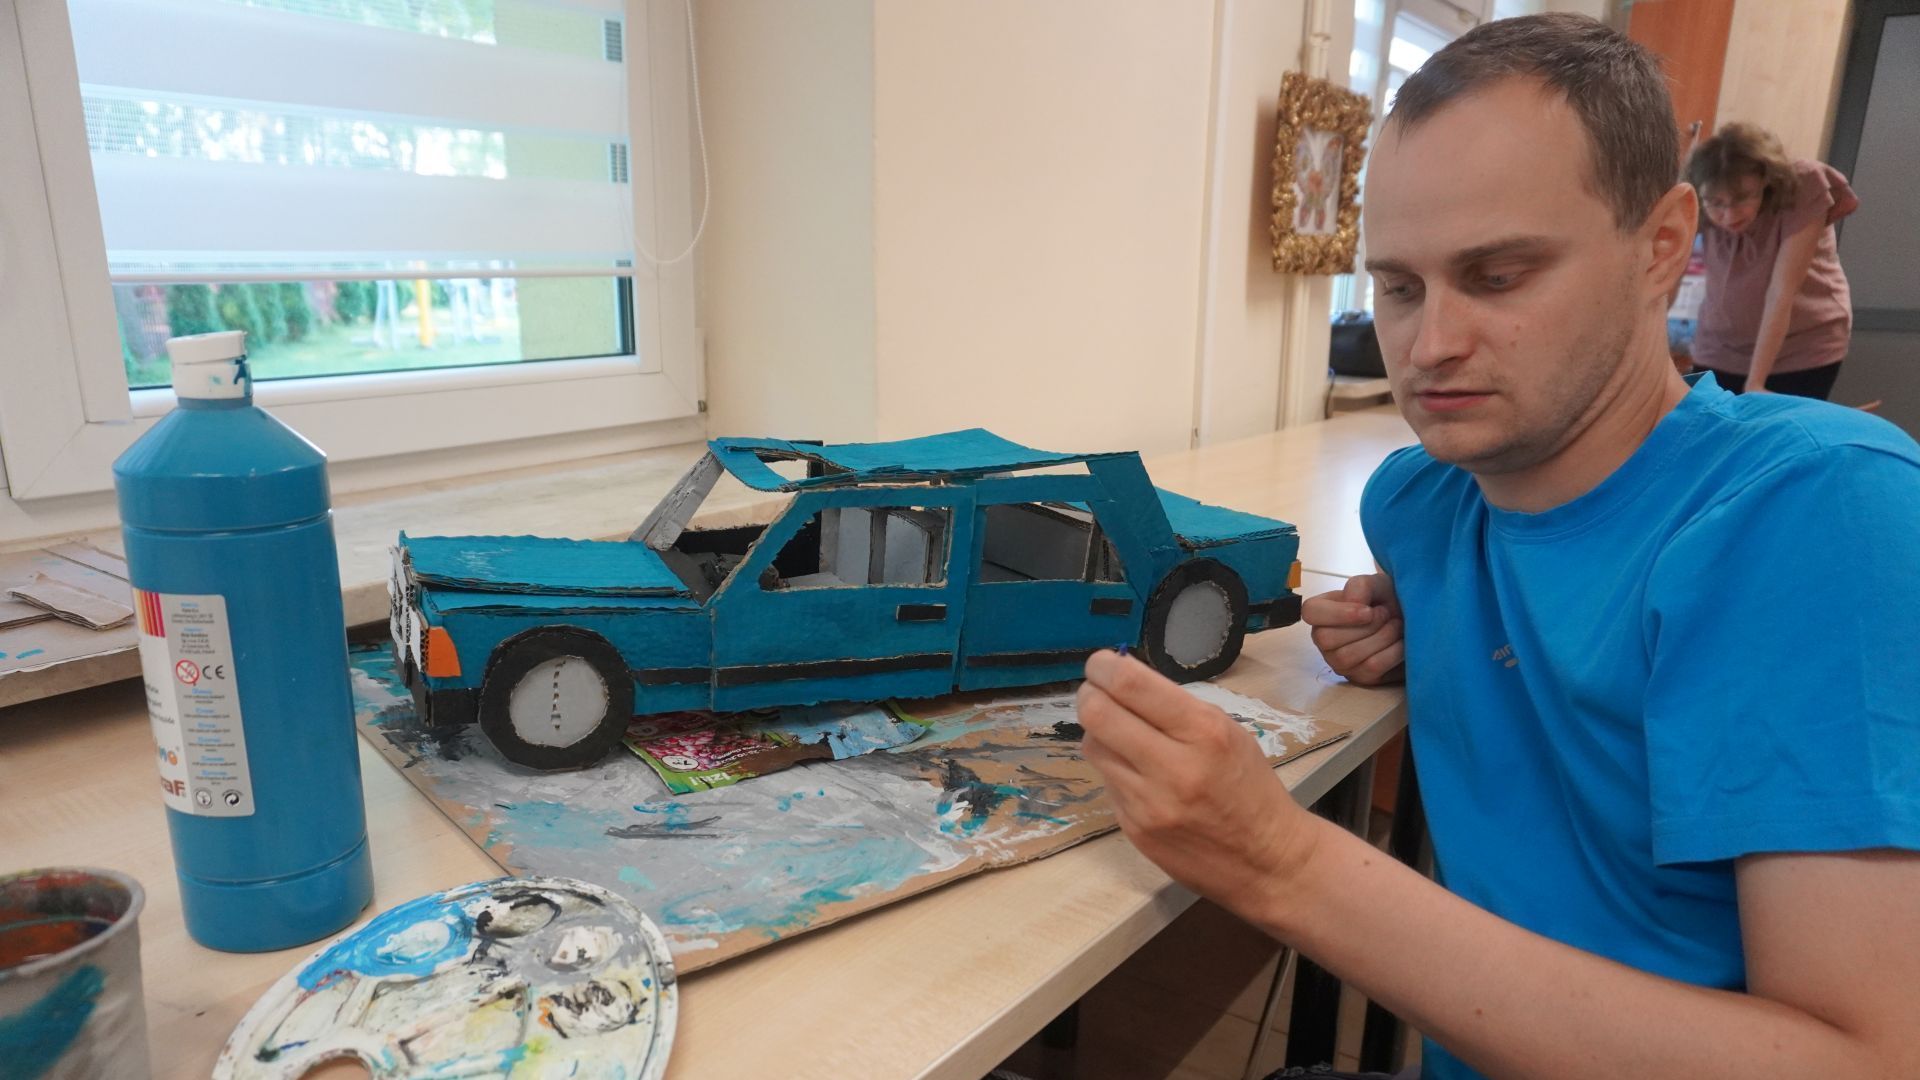 Uczestnik Krzysztof pozuje do zdjęcia podczas wykonywania pracy z kartonu przedstawiającej samochód (model starego Mercedesa). 